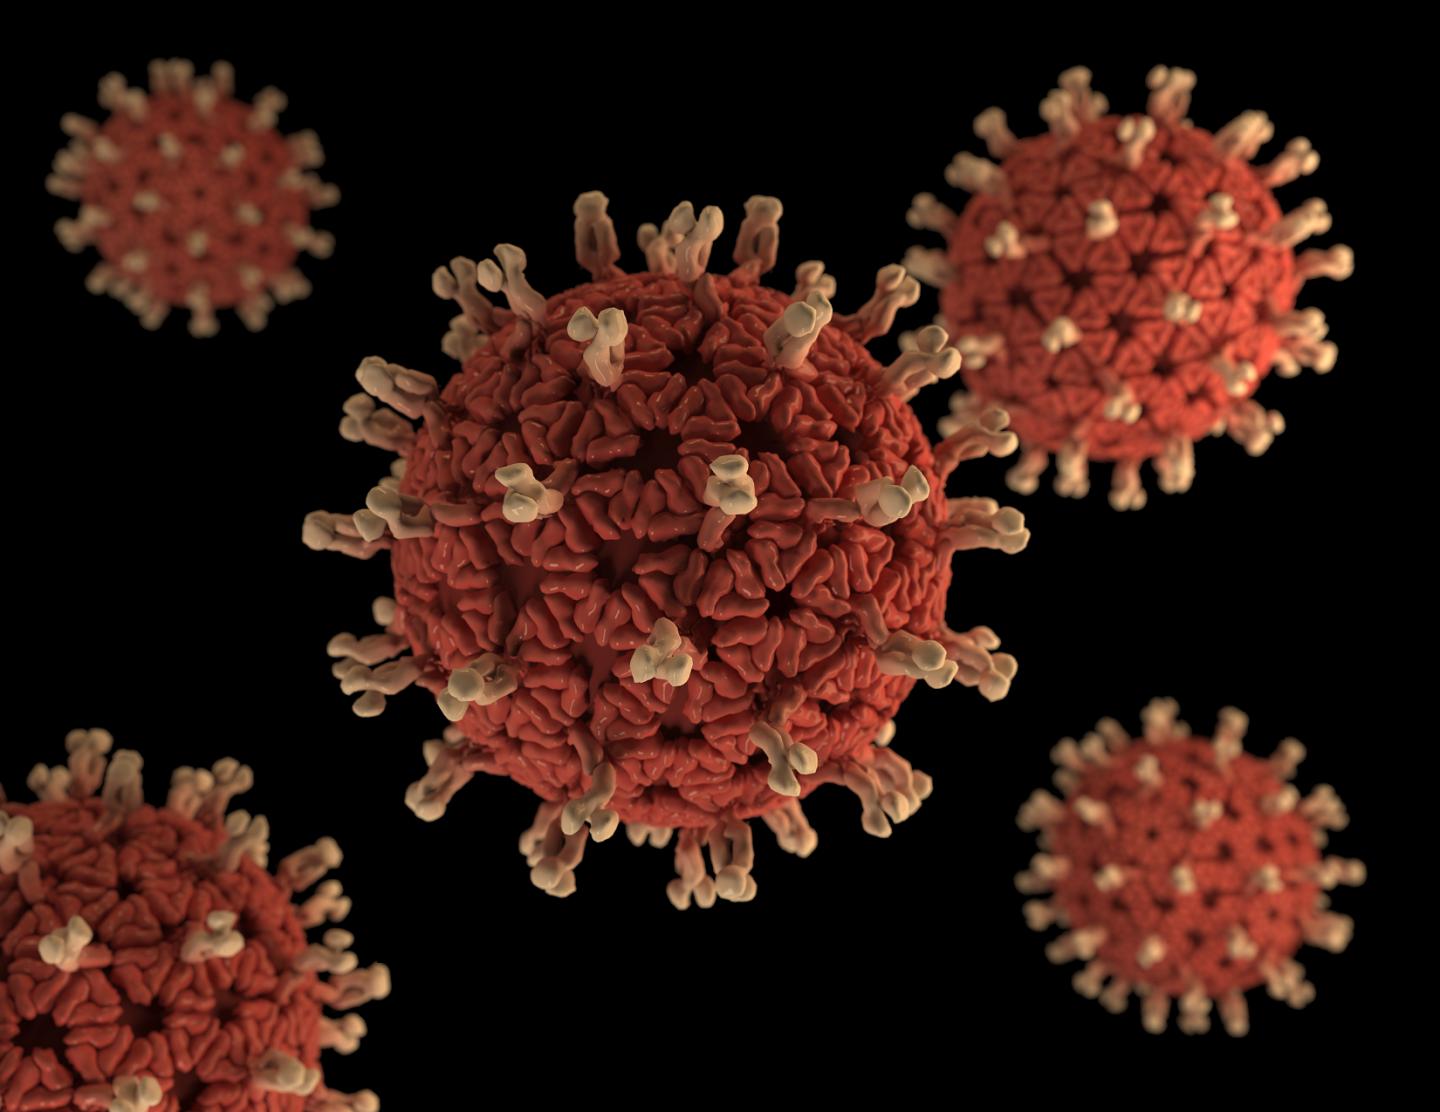 Argentina to donate 200K rotavirus vaccines to Bolivia